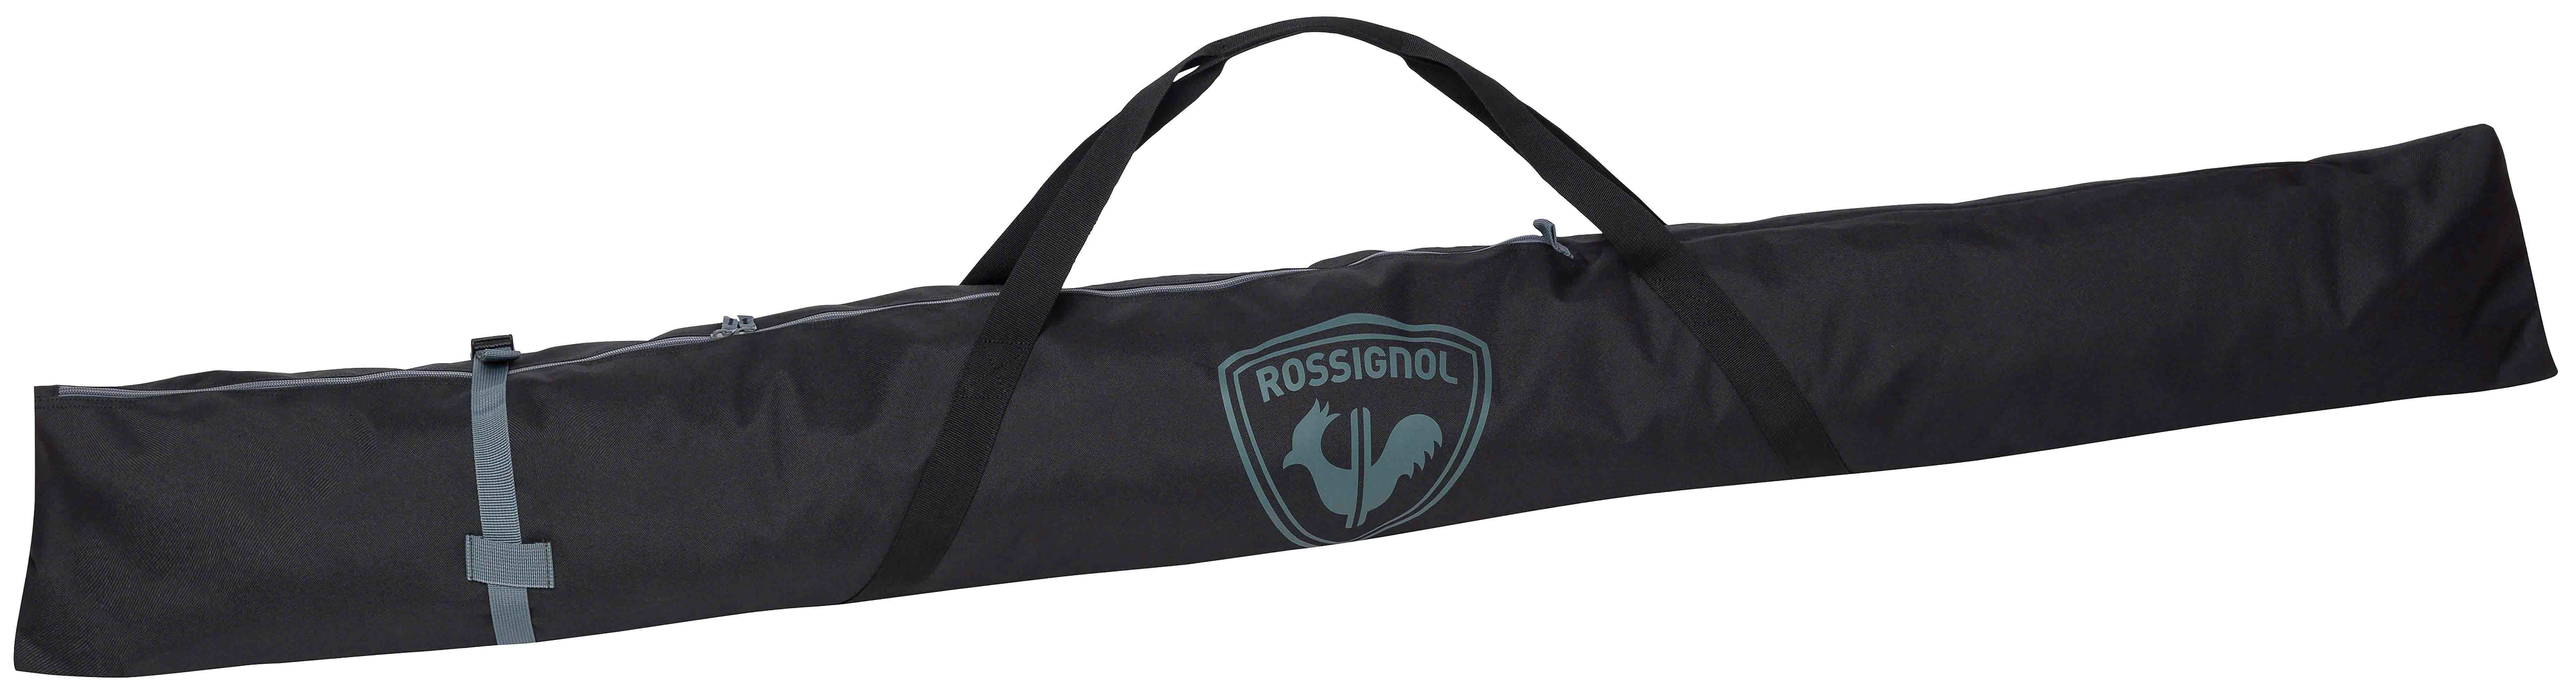 Rossignol Basic skitrekk/-bag